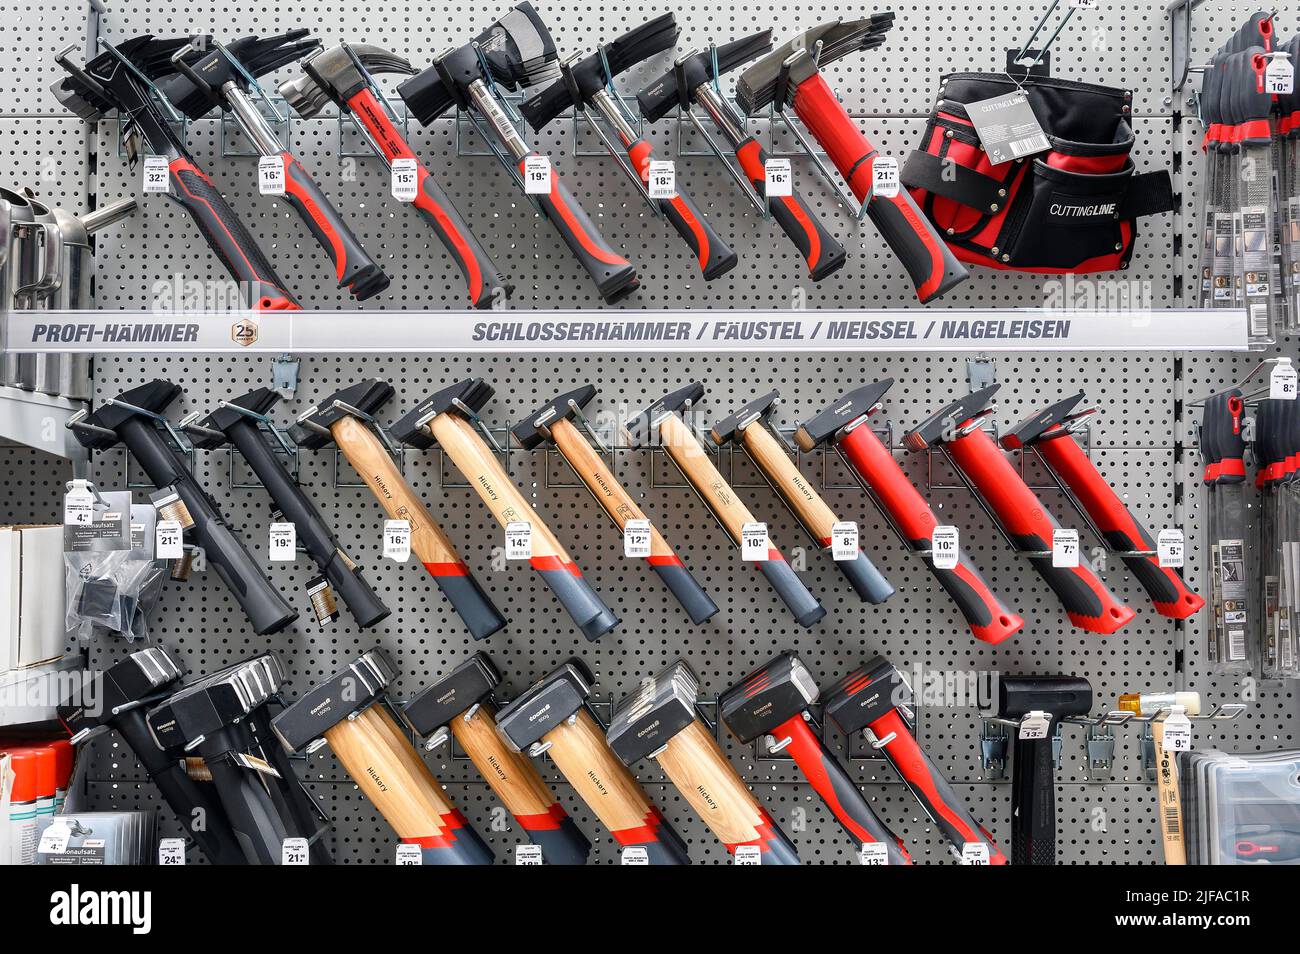 Divers marteaux dans le magasin de bricolage, Kempten, Allgaeu, Bavière, Allemagne Banque D'Images